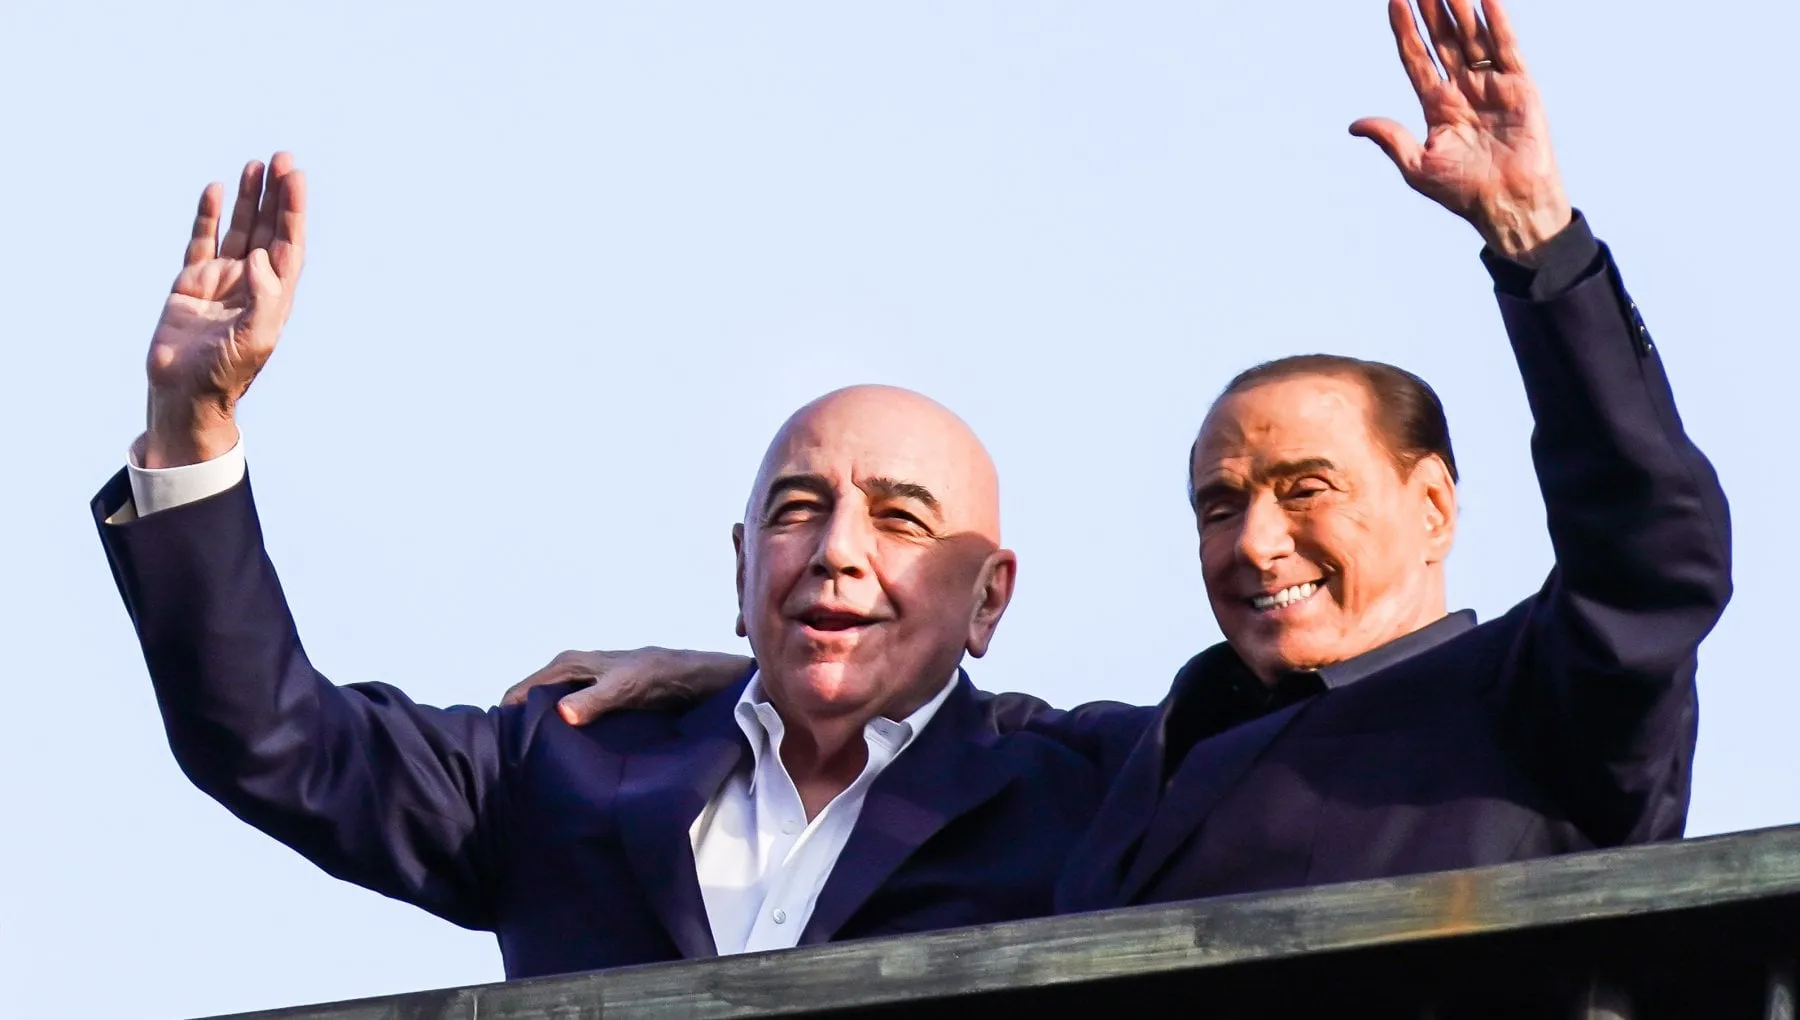 Galliani, Berlusconi e l’idea di prendere il Milan: “Quella sera sembravamo Totò e Peppino”